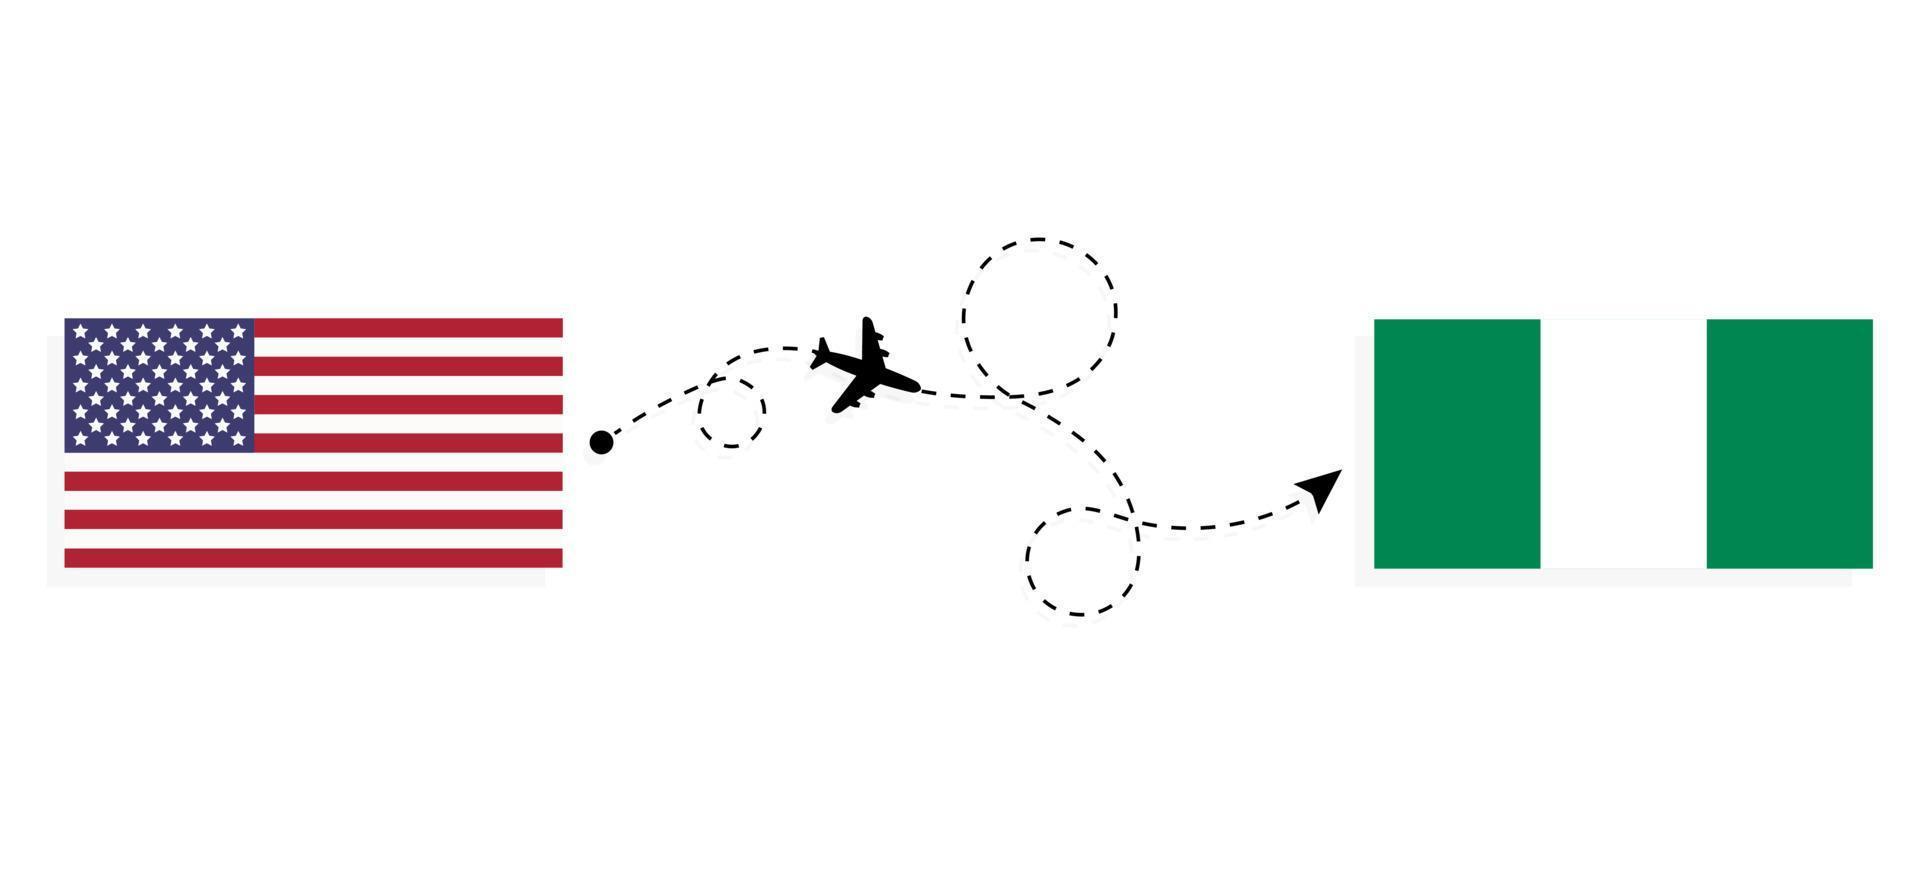 vol et voyage des états-unis au nigeria par concept de voyage en avion de passagers vecteur